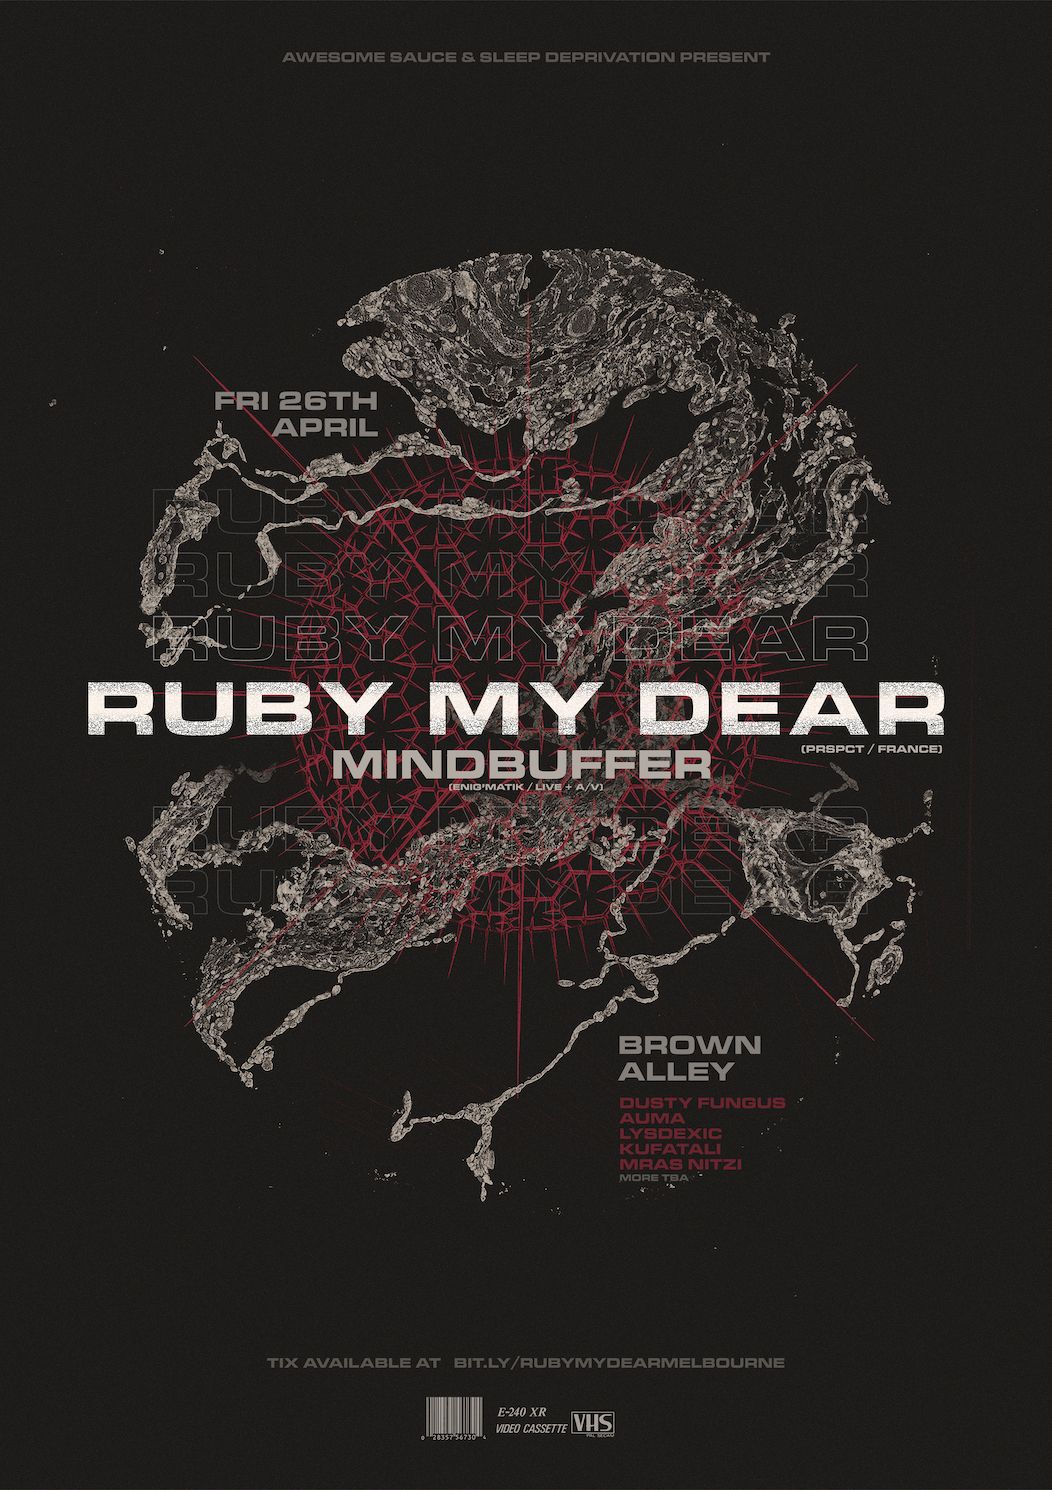 Supporting Ruby My Dear (FRA) & Mindbuffer (Live AV) April 26, 2019